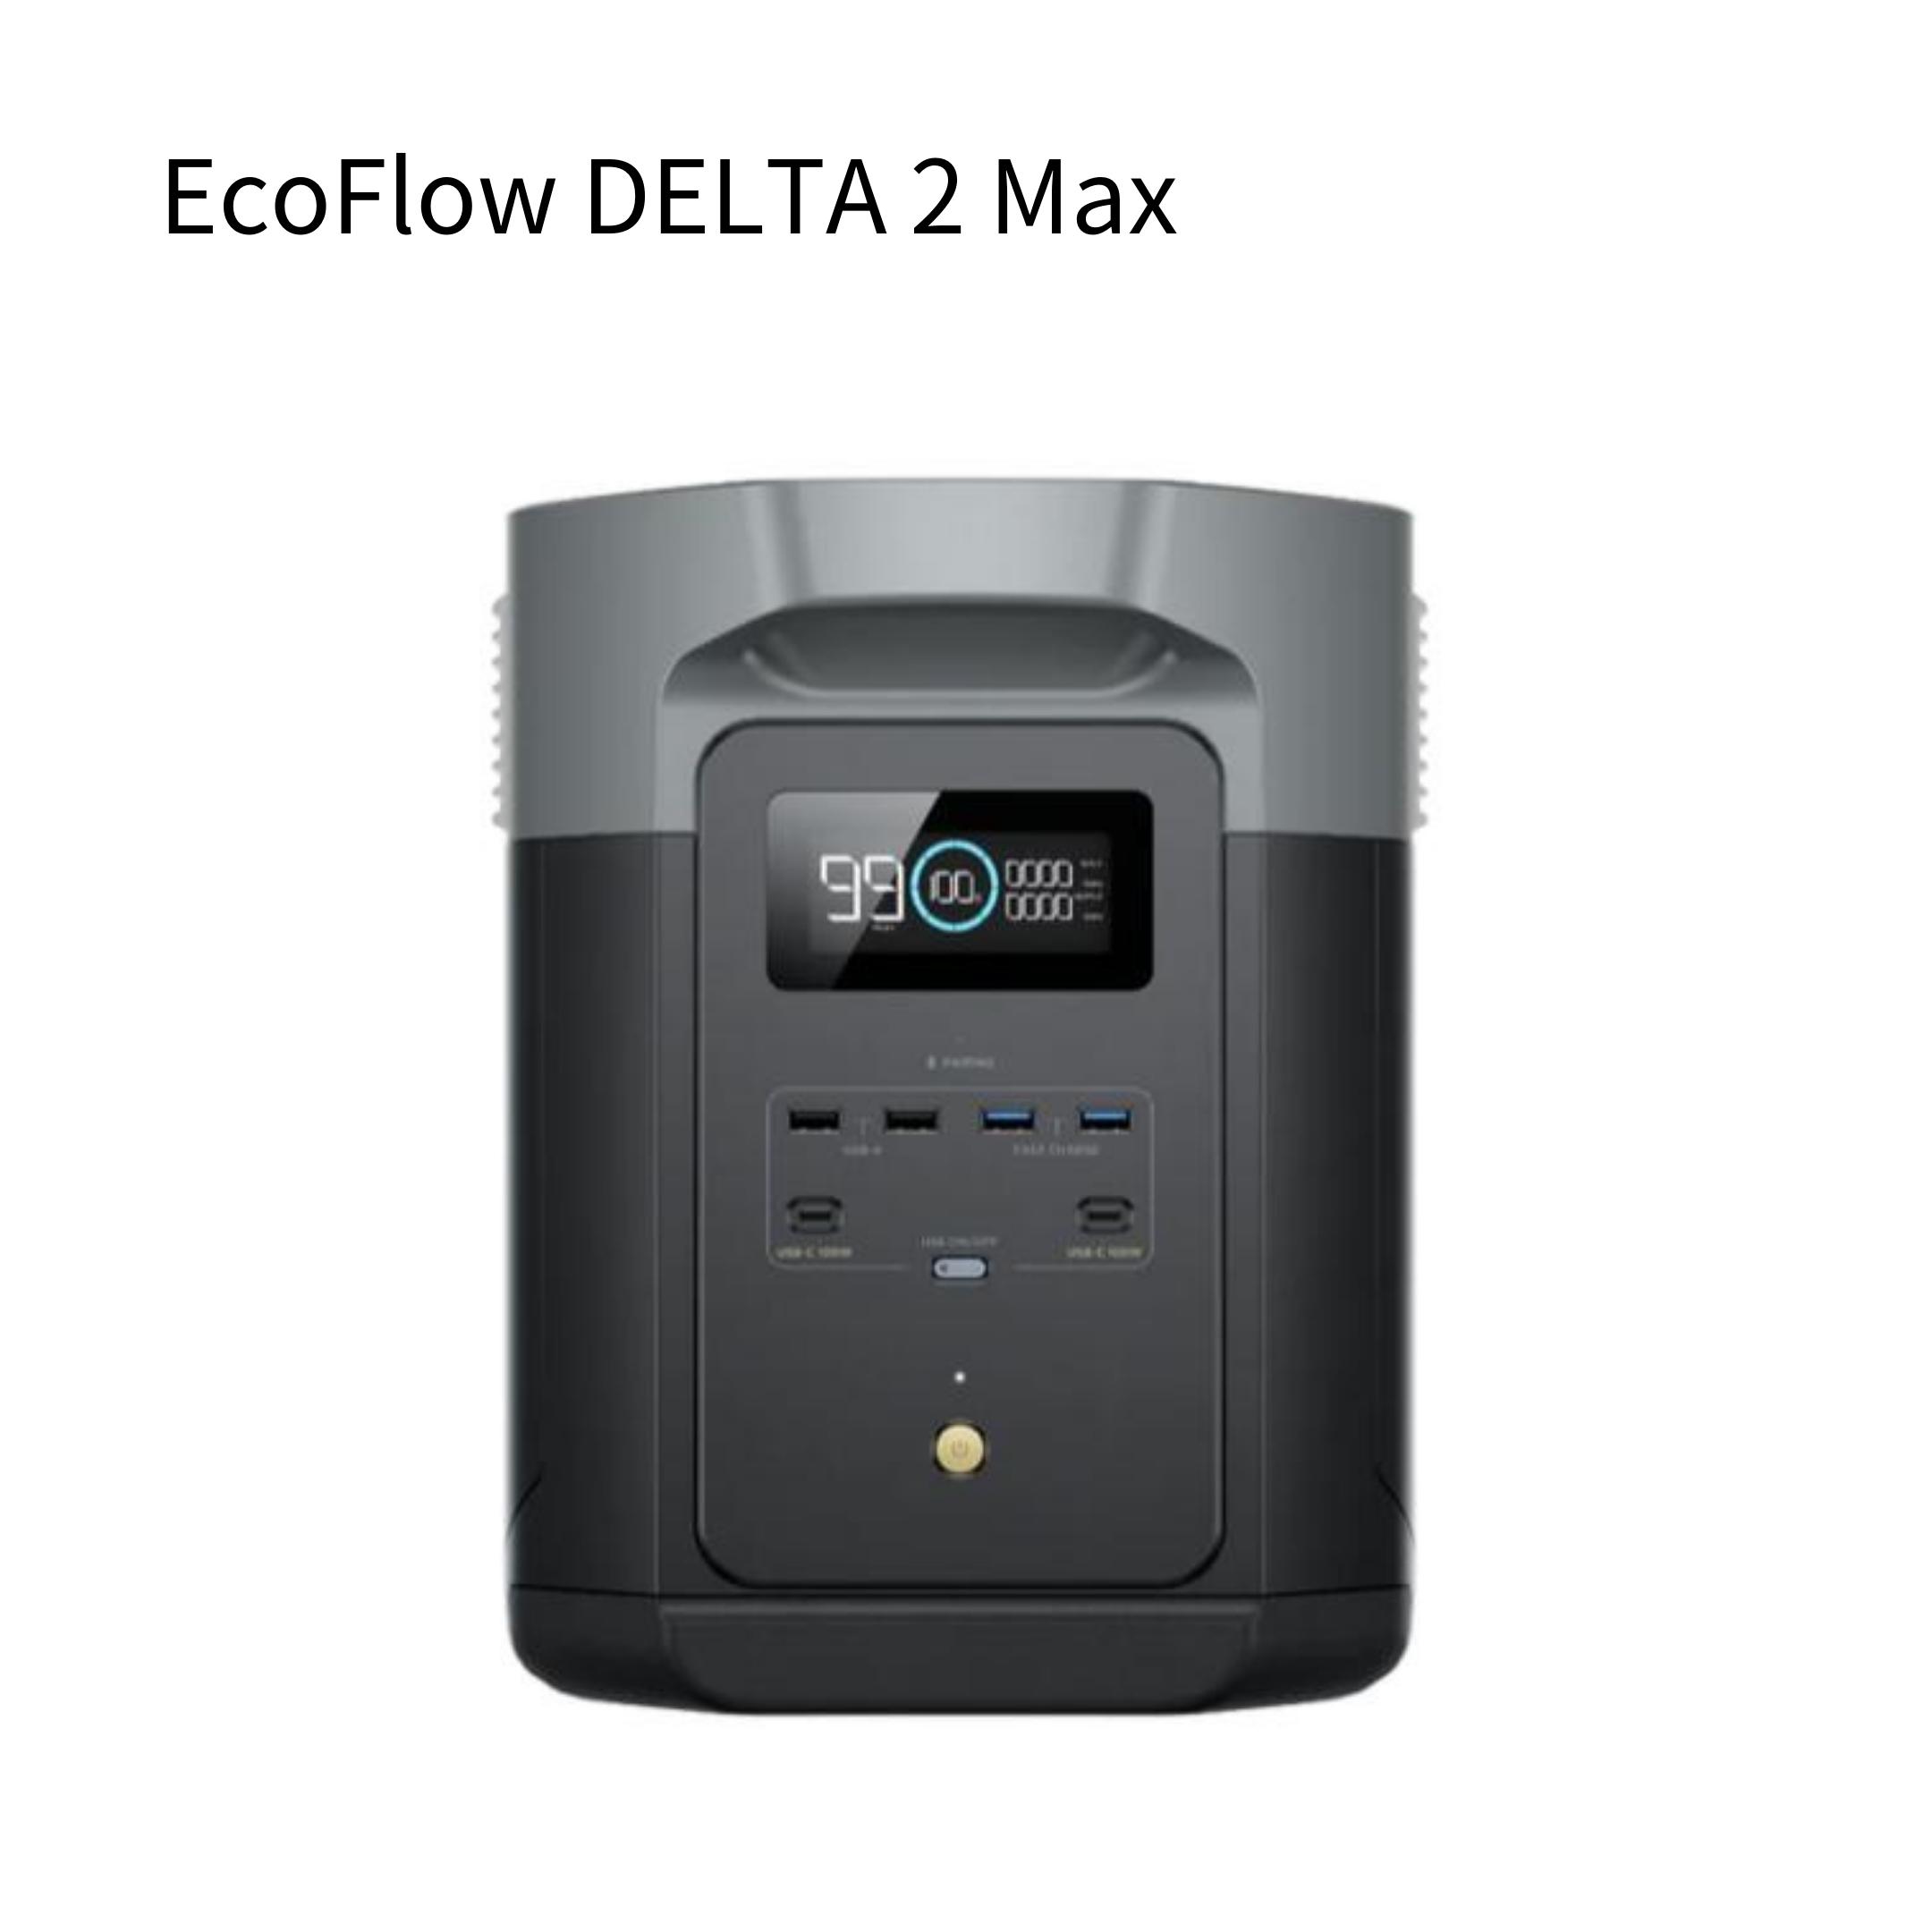 EcoFlow DELTA 2 Max eko поток 2048Wh Lynn кислота металлический портативный источник питания . предварительный расчет консультации приветствуется in voice производитель 5 год гарантия 